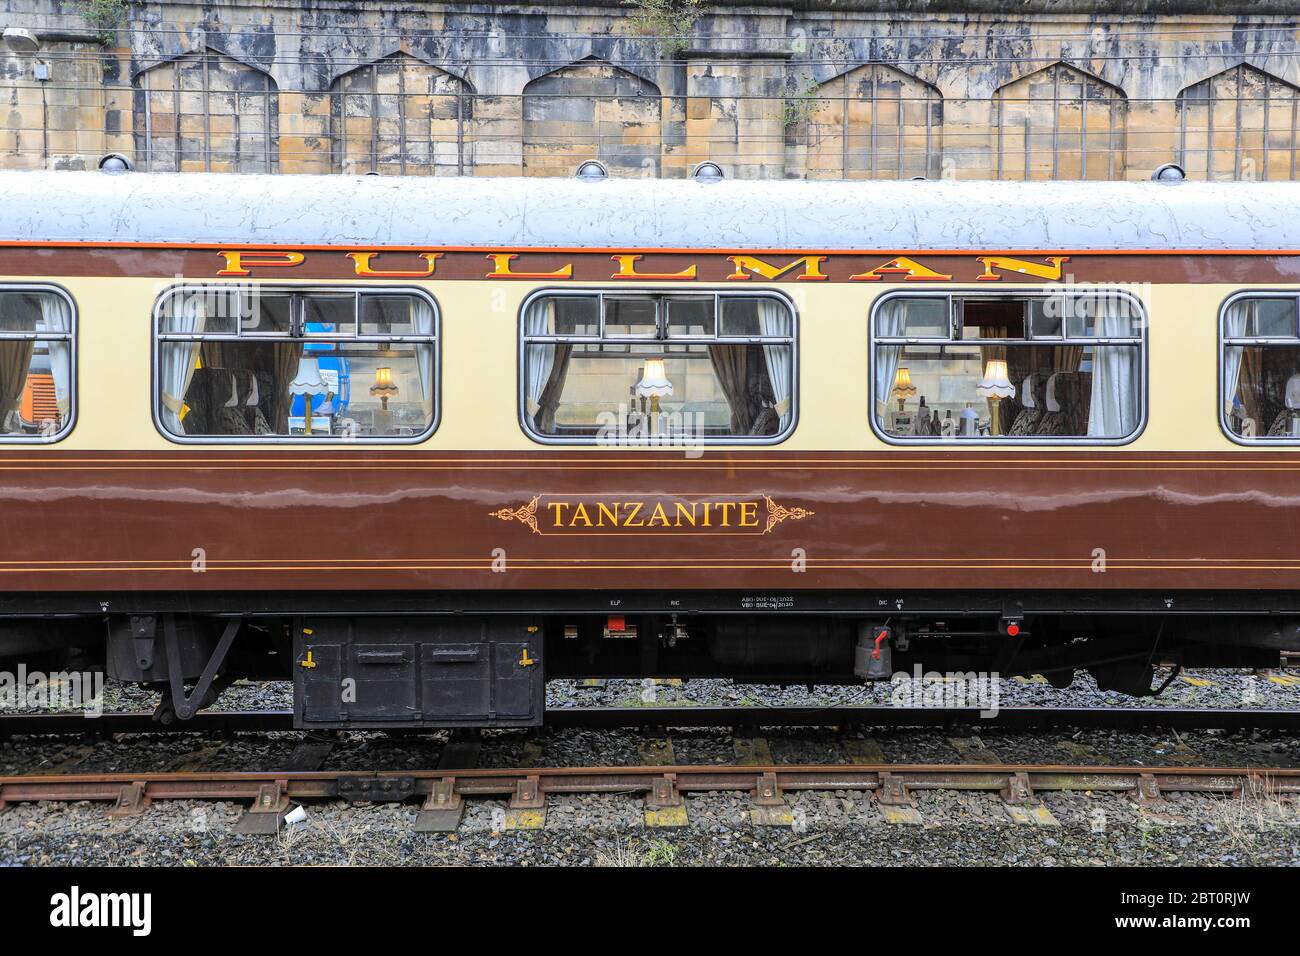 Un wagon ou autocar Pullman, nommé Tanzanite, numéro 350, construit en 1960 à la gare de Carlise, Carlisle, Cumbria, Angleterre, Royaume-Uni Banque D'Images